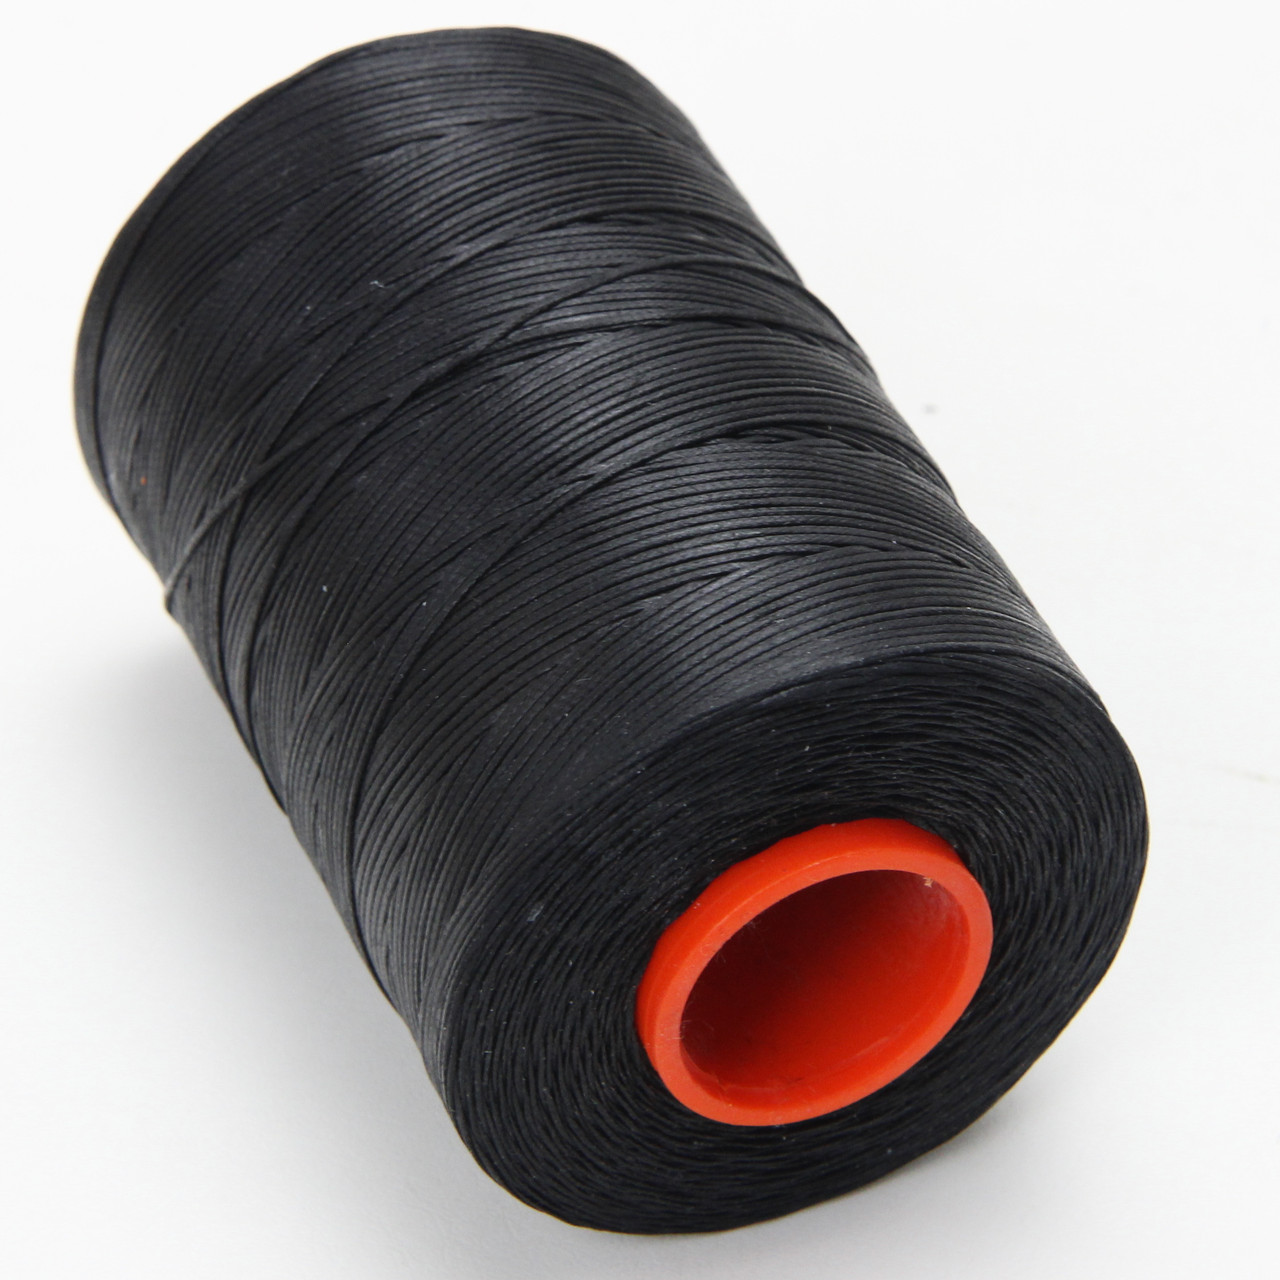 Нить для перетяжки руля вощеная (цвет черный), толщина 1.0 мм, длина 500 метров "Турция" детальная фотка